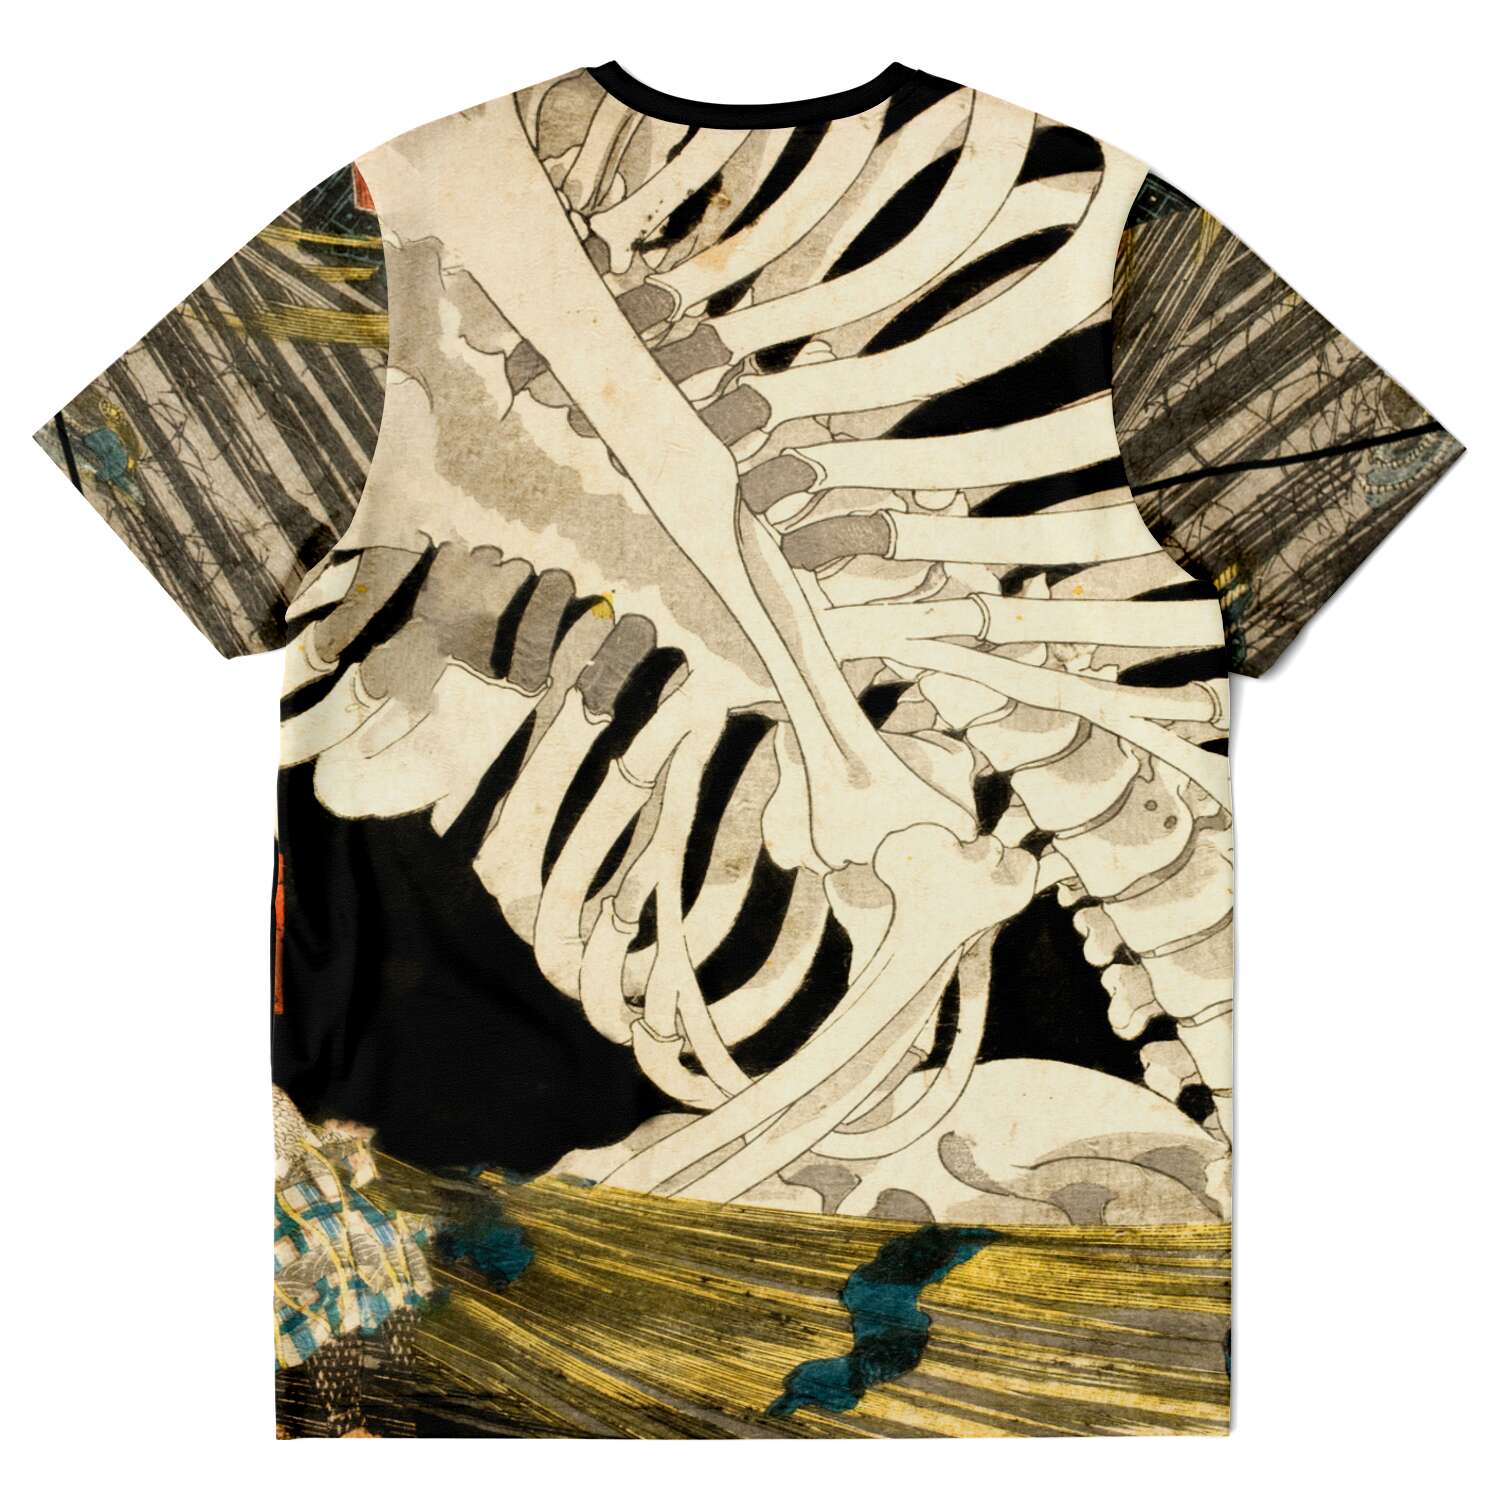 T-shirt Utagawa Kuniyoshi: Mitsukuni Defying the Skeleton Spectre Vintage Yokai Supernatural Japanese Mythology Boho Ukiyo-e Graphic T-Shirt